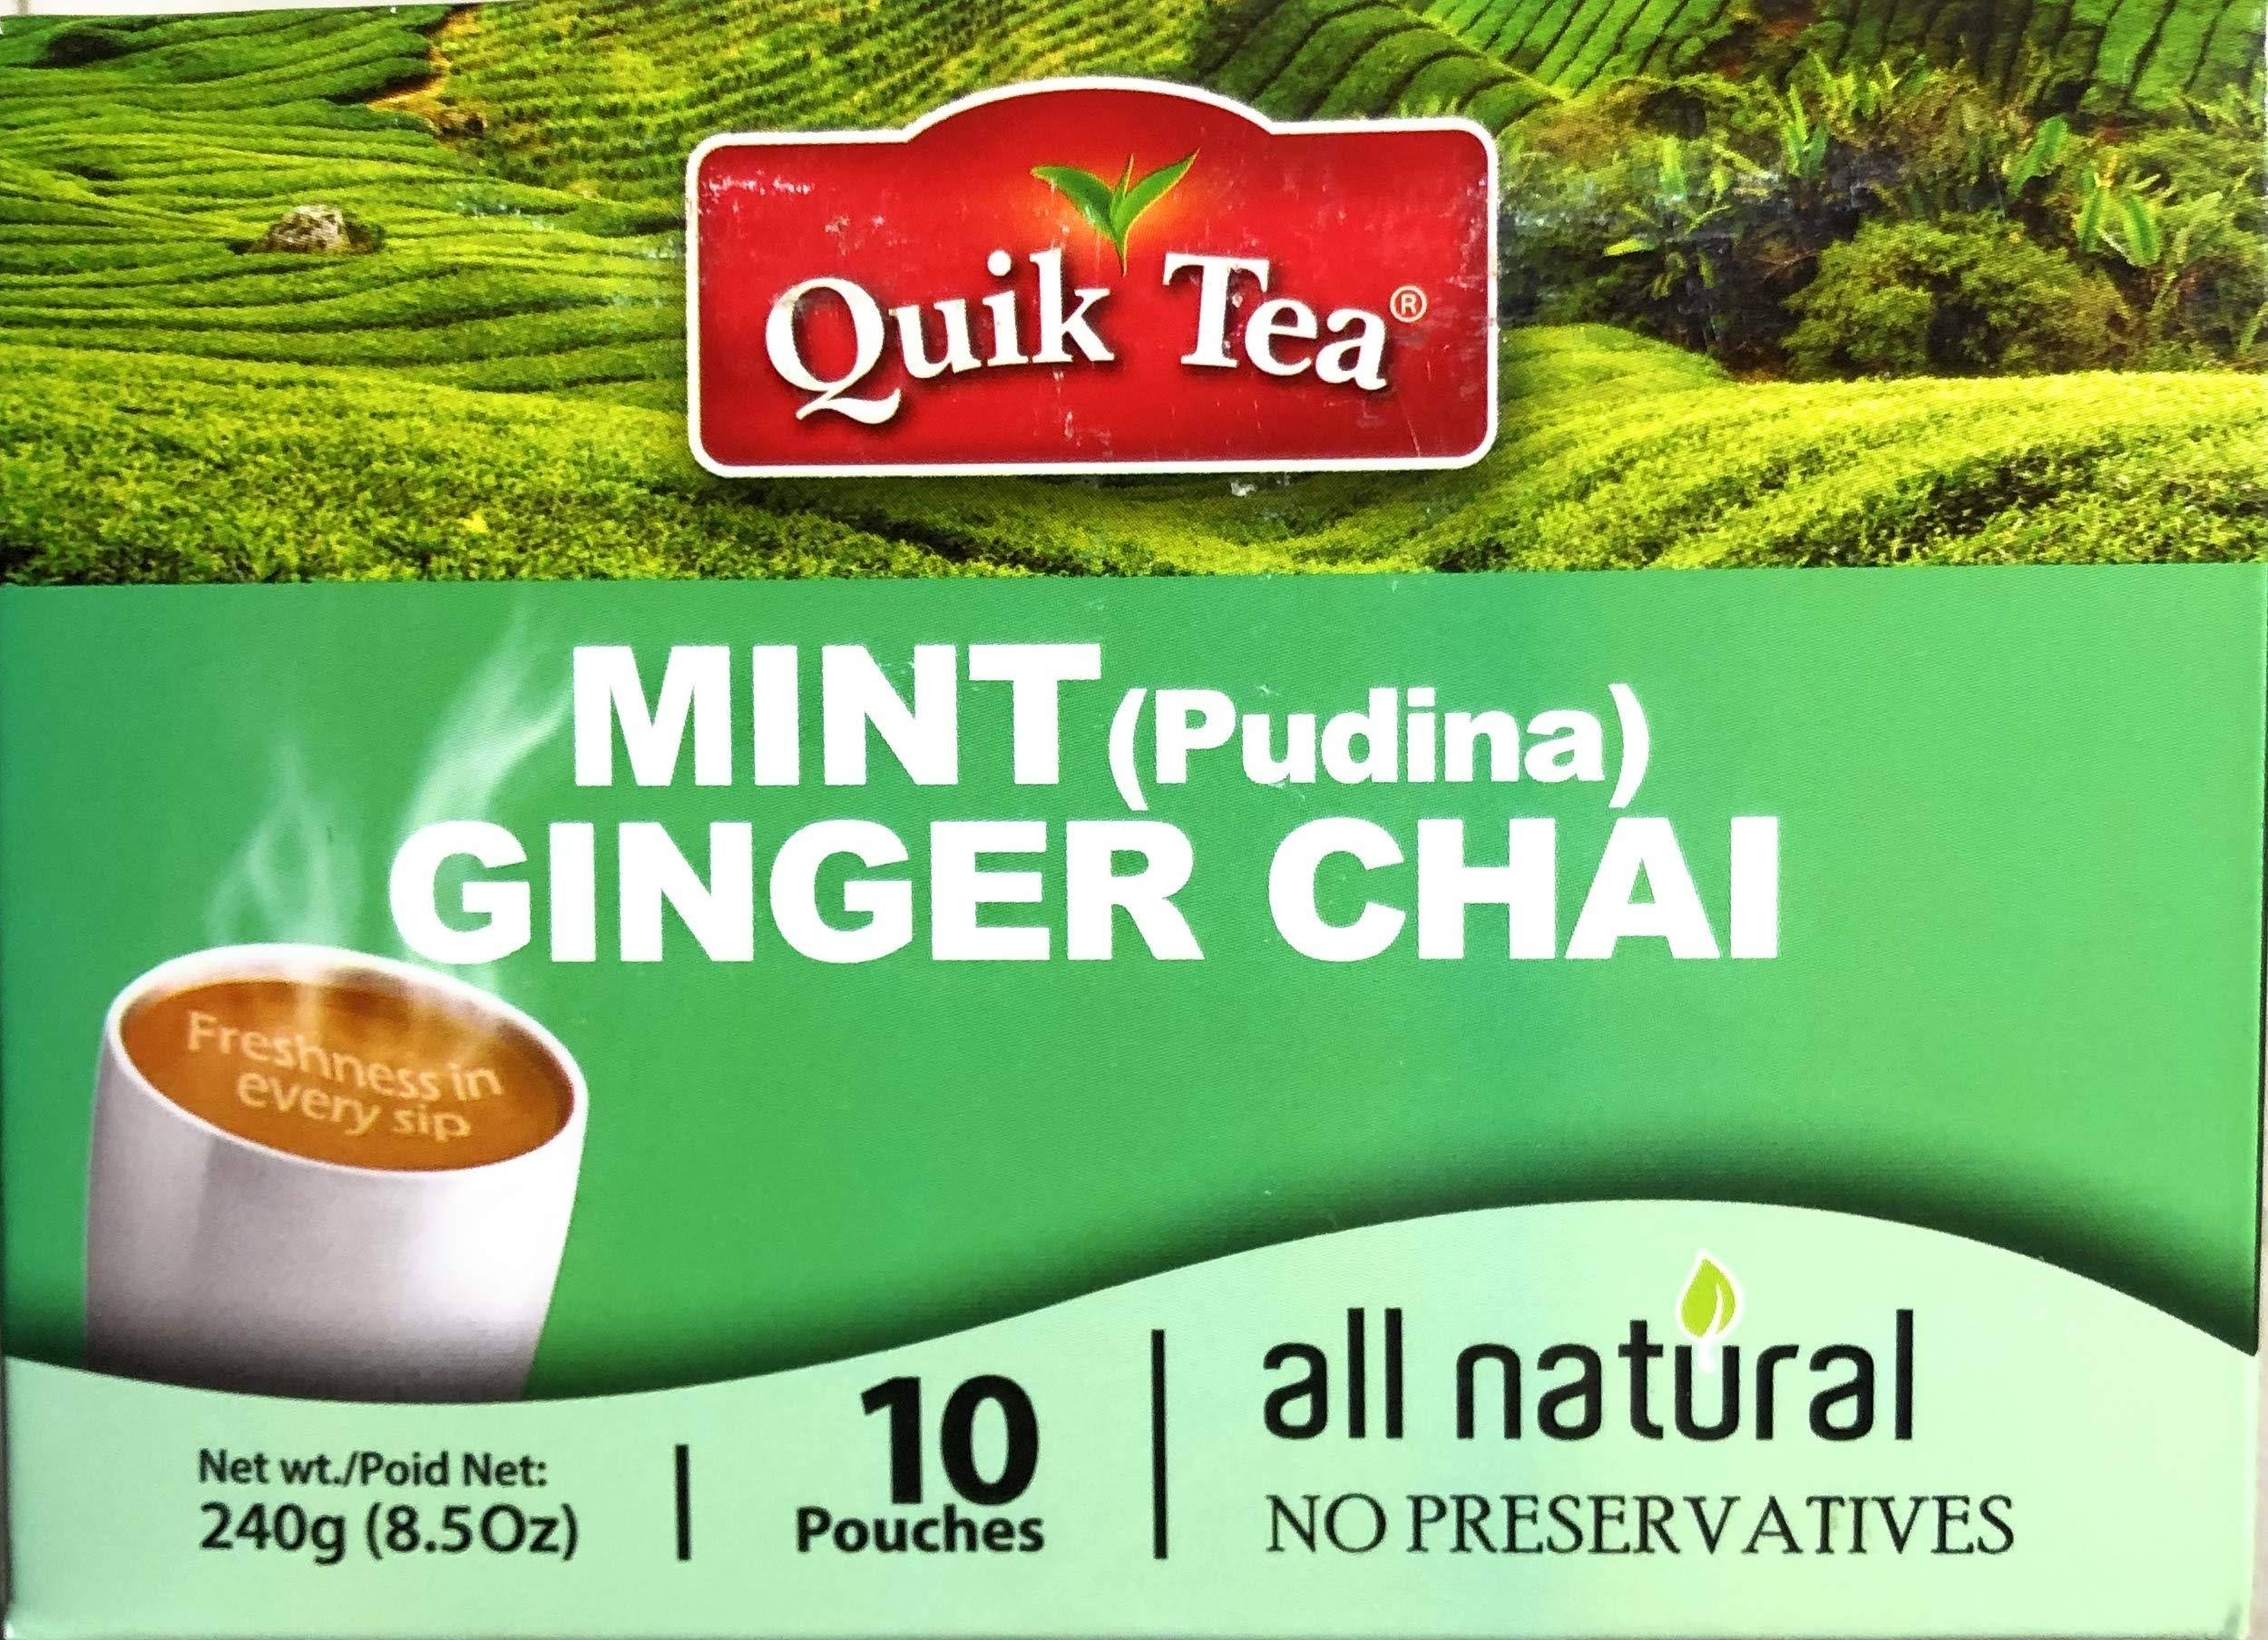 Quik Tea All Natural Mint (Pudina) Ginger Chai